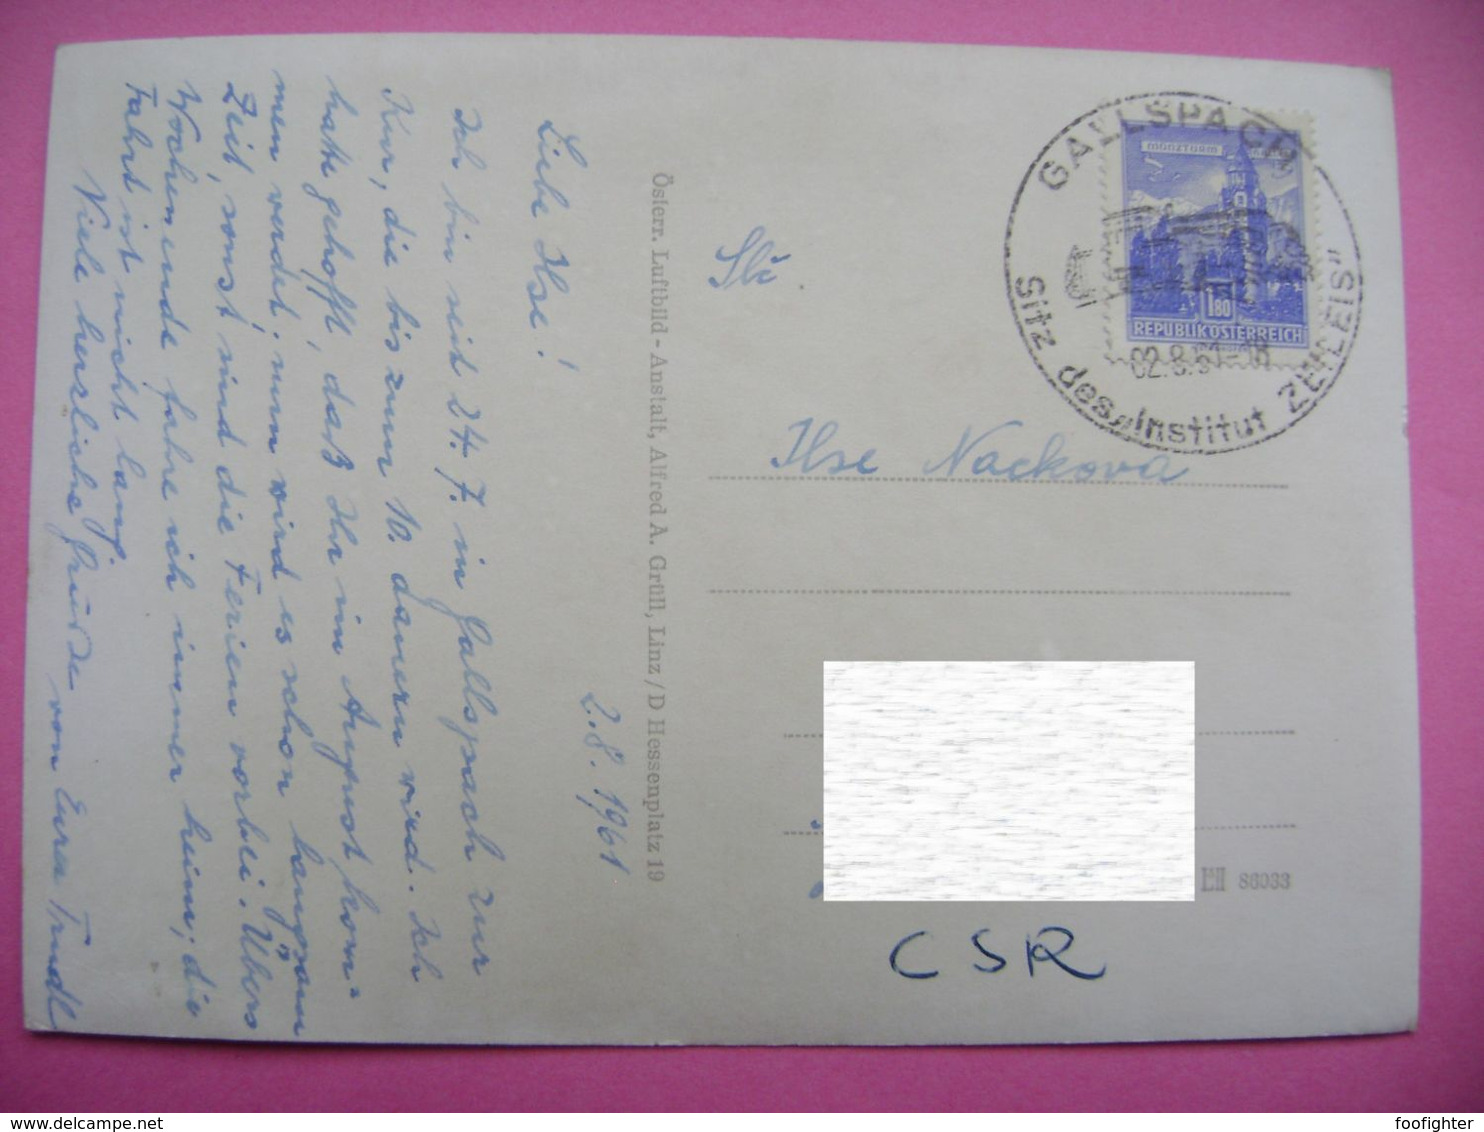 Austria: GALLSPACH - Luftbild - Commemorative Postmark - Sitz Des "Institut ZEILEIS" 2.8.1961 - Gallspach